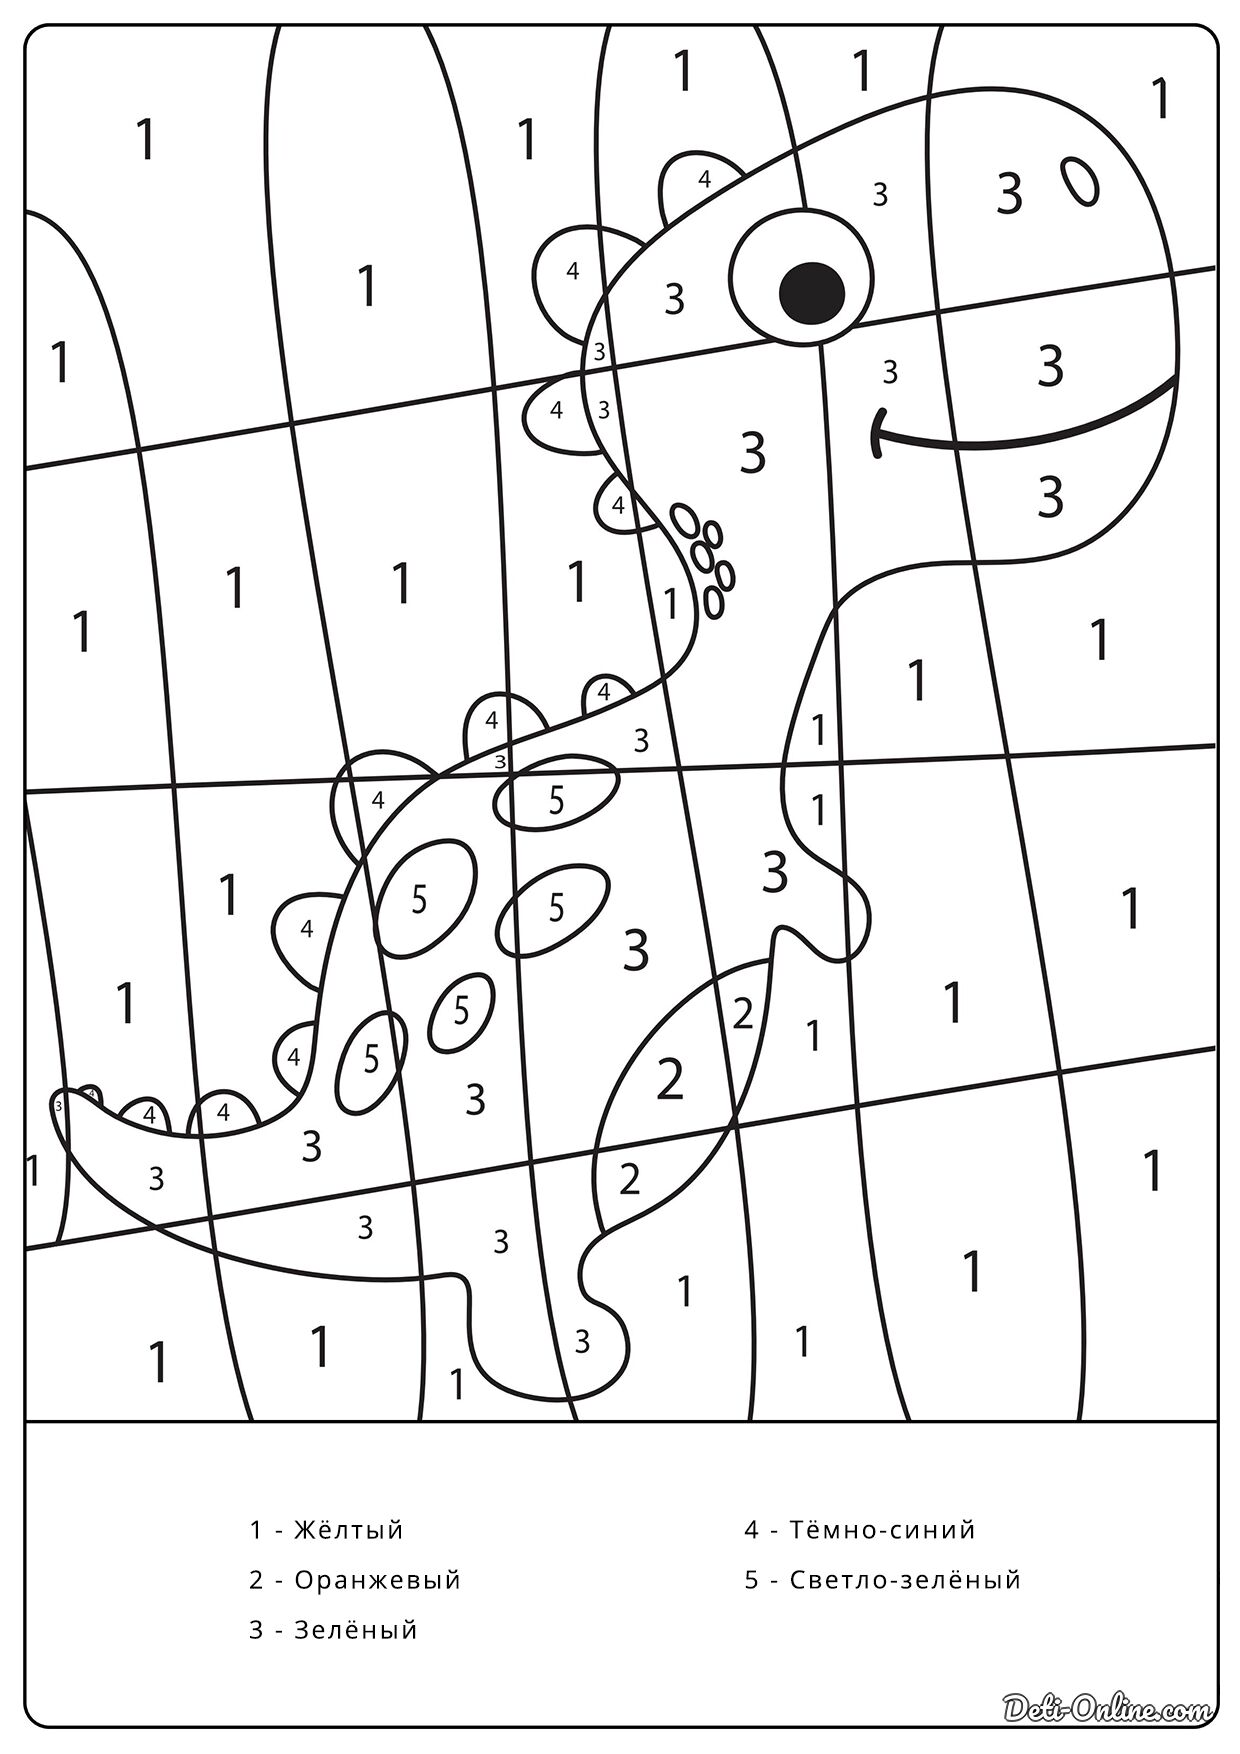 Раскраска Динозавр по номерам распечатать или скачать